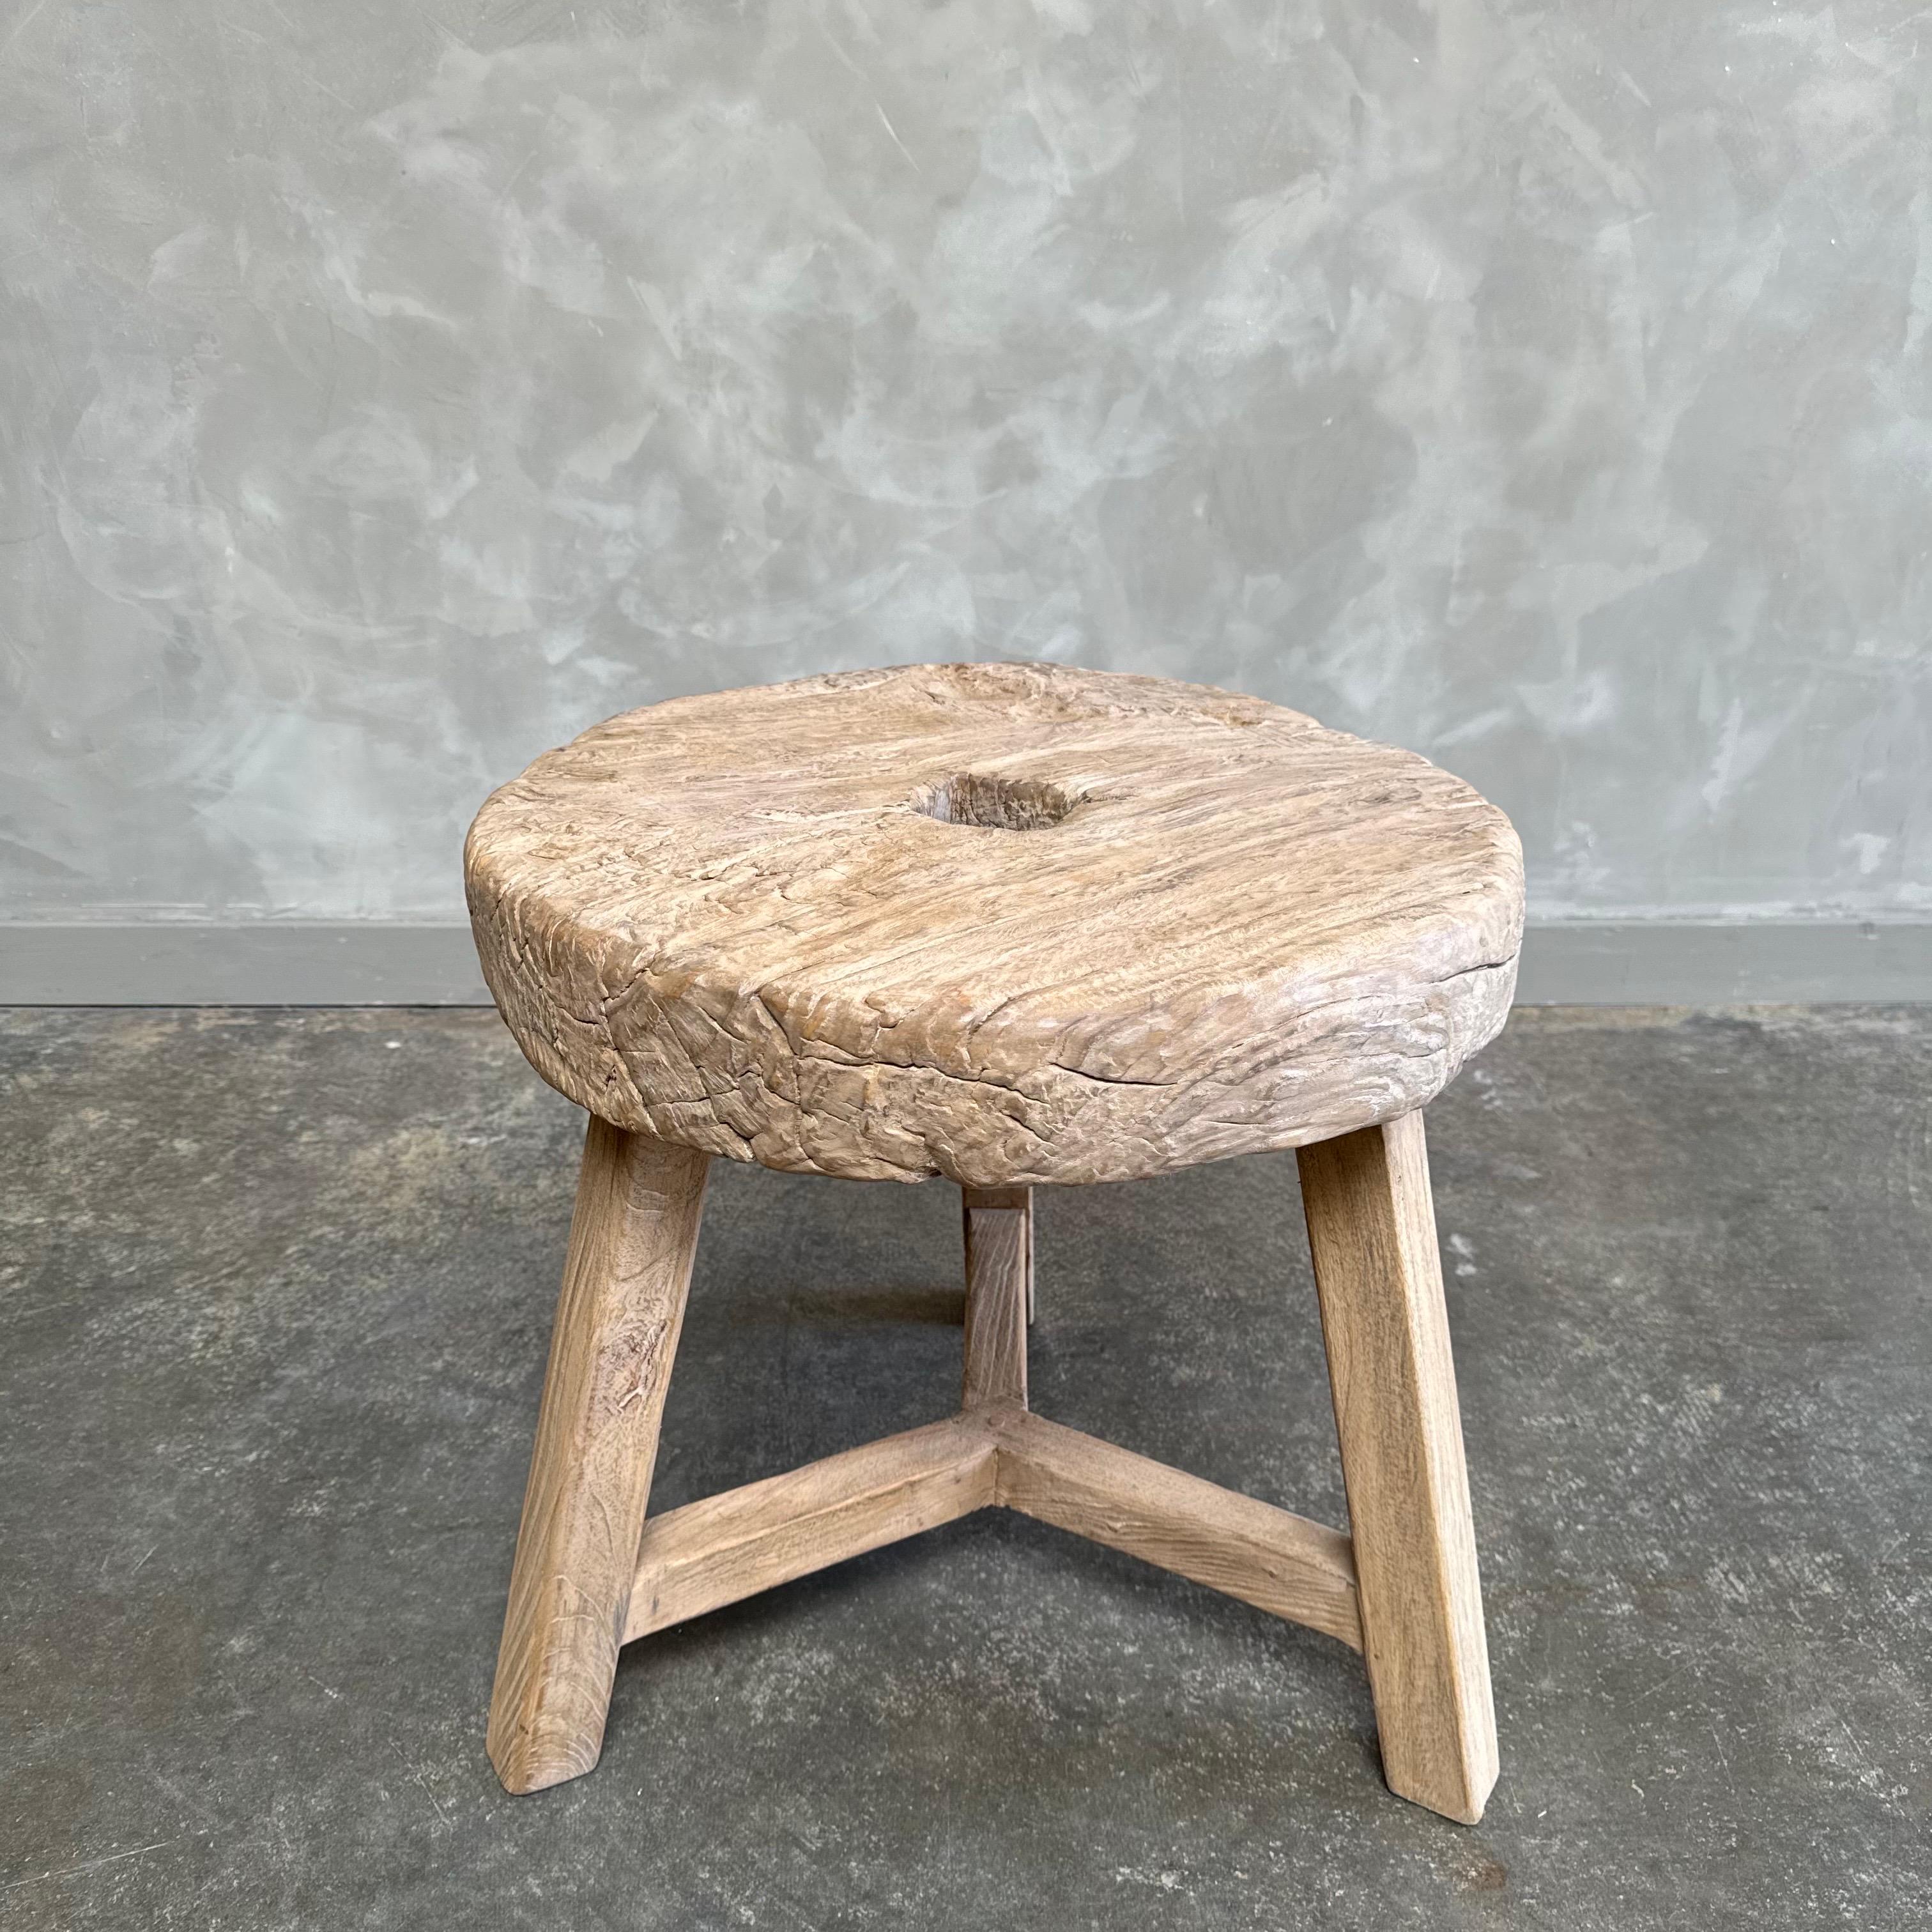 Antiker Beistelltisch mit Rädern. Dieser Vintage-Rolltisch aus Ulmenholz ist mit einer mittleren bis dunklen Beize behandelt. Der Tisch ist solide und stabil, bereit für den täglichen Gebrauch. Verwenden Sie ihn als Beistelltisch, Hocker oder für